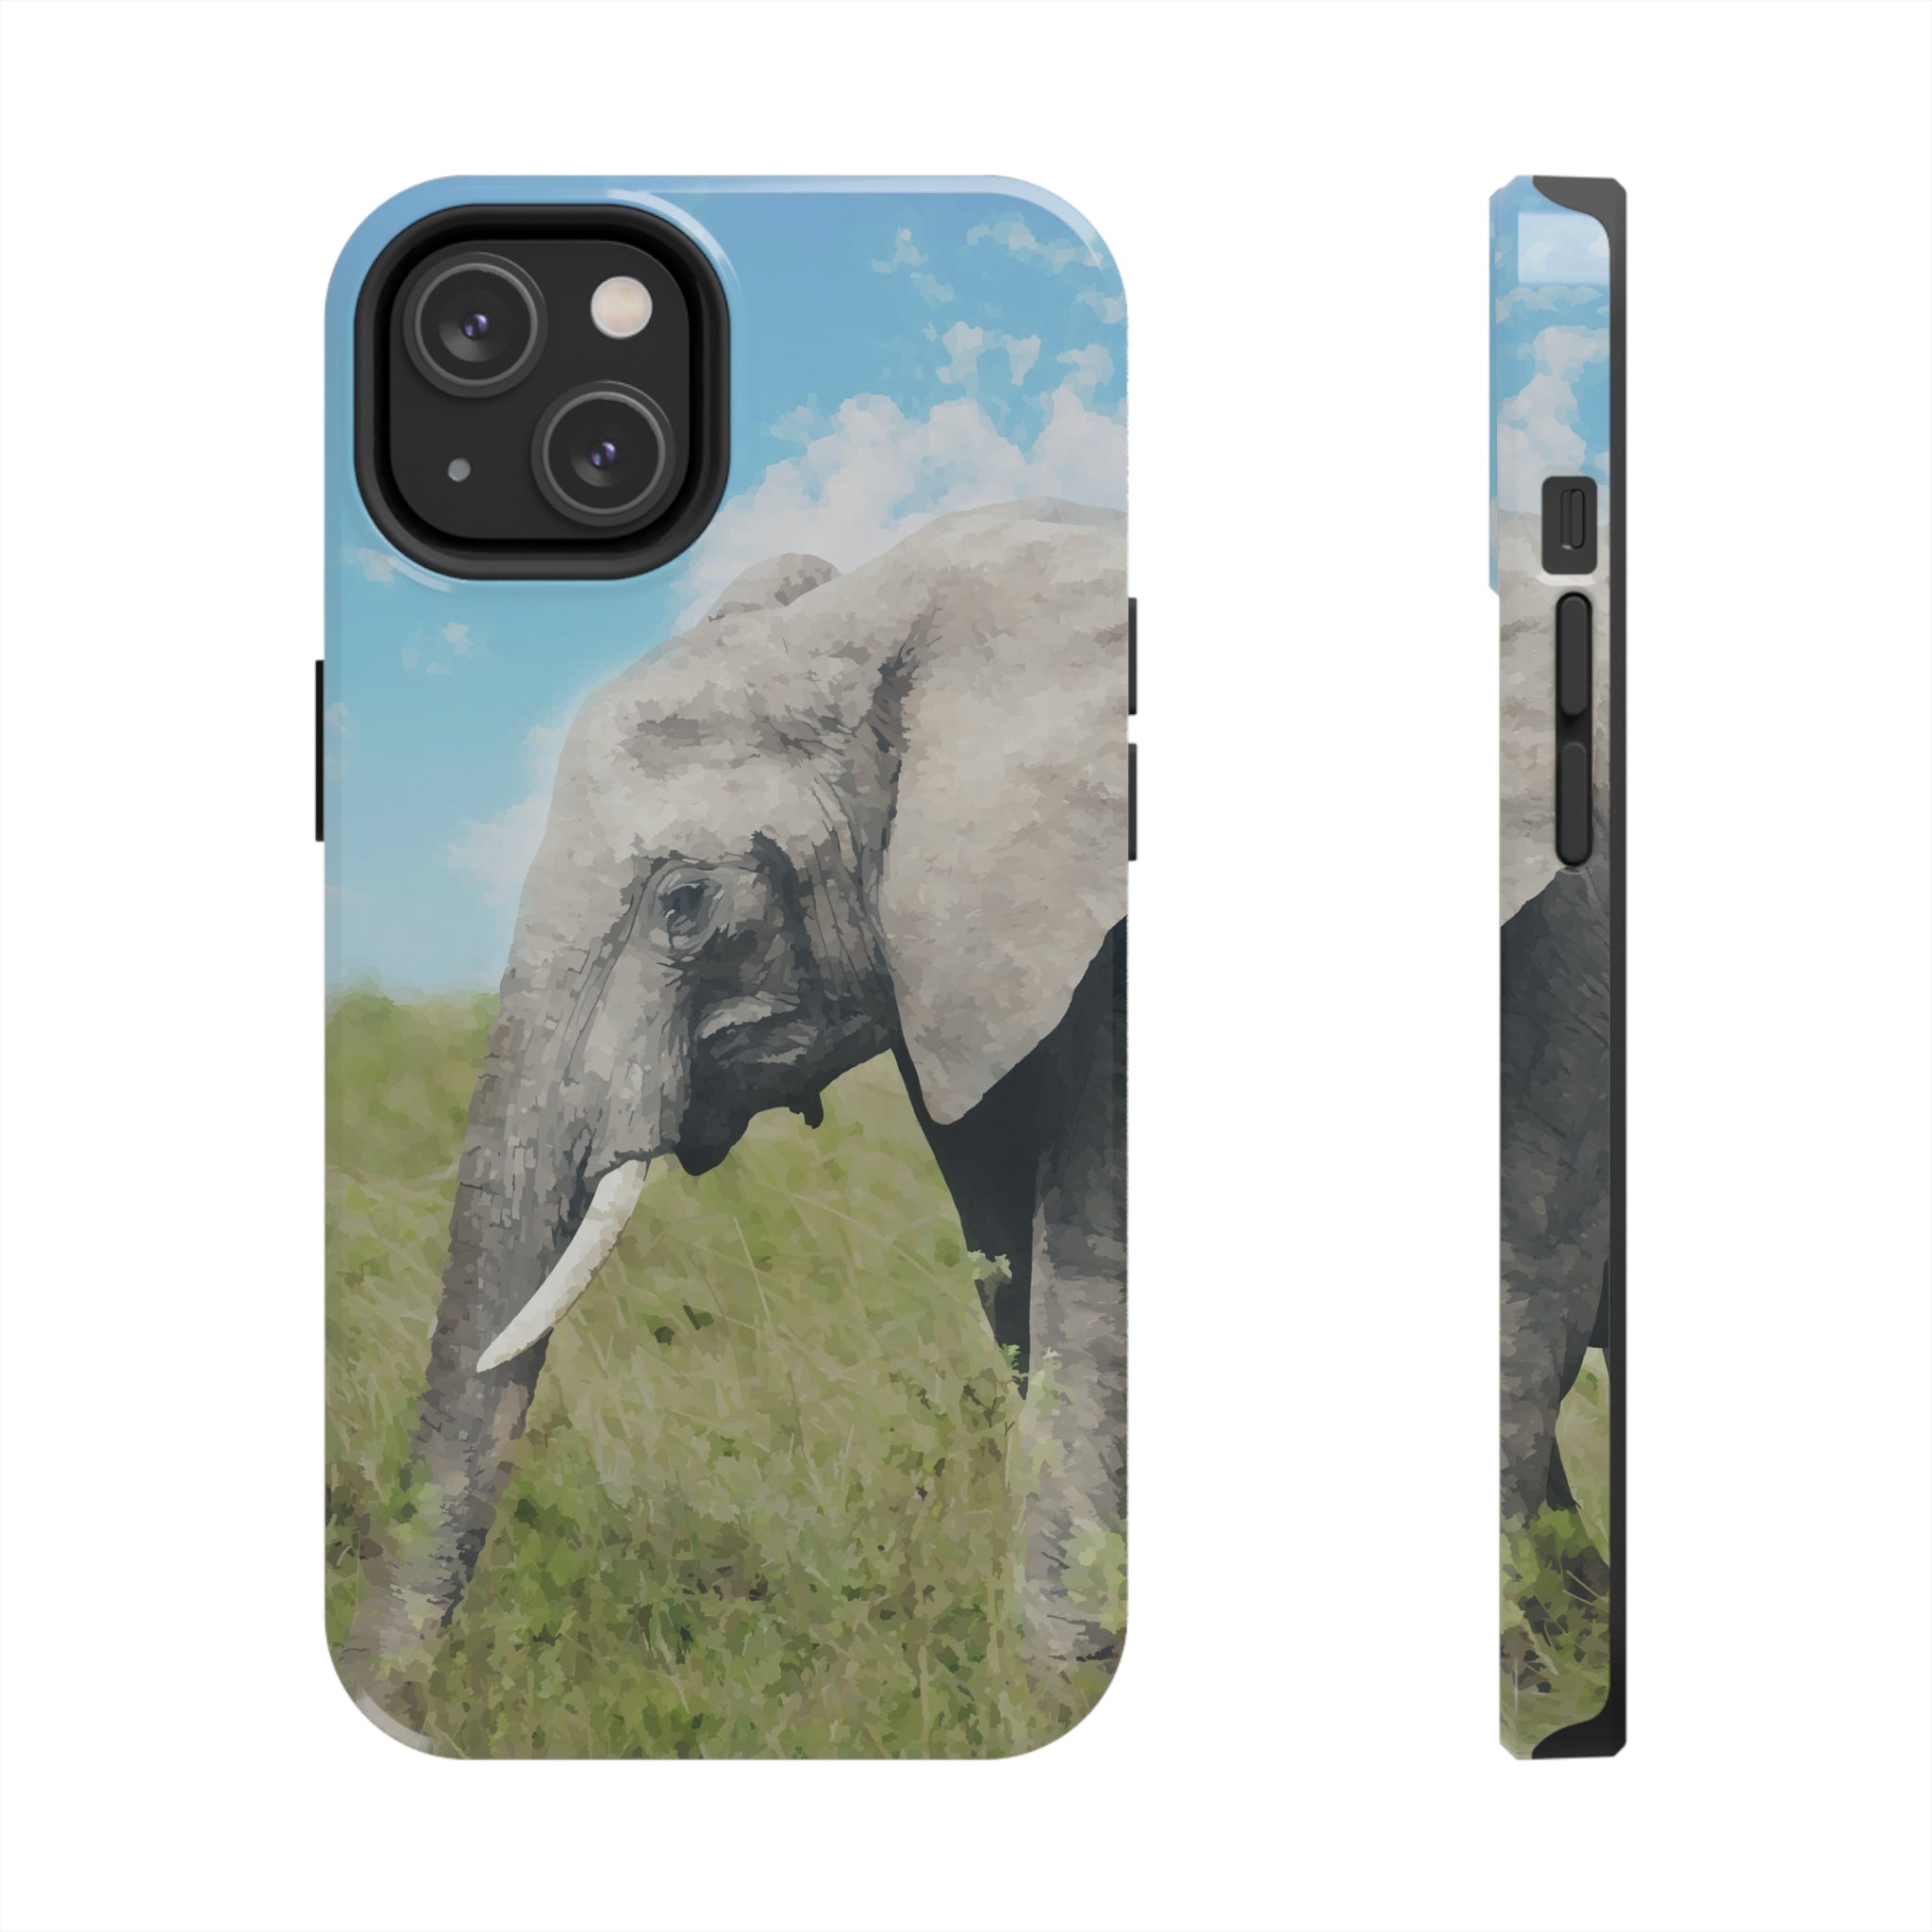 Main image of Elephant iPhone Case